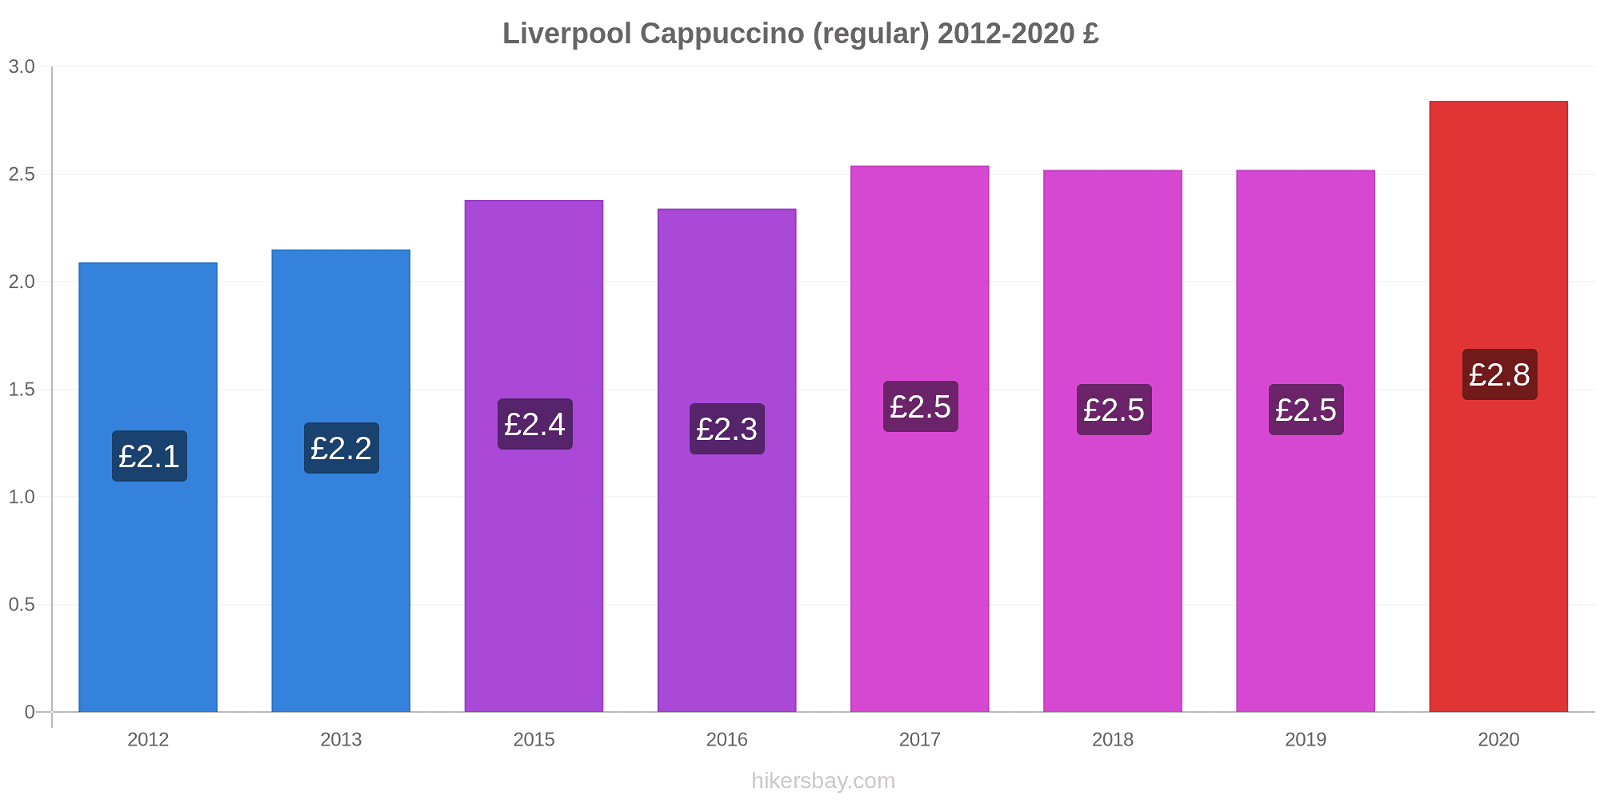 Liverpool price changes Cappuccino (regular) hikersbay.com